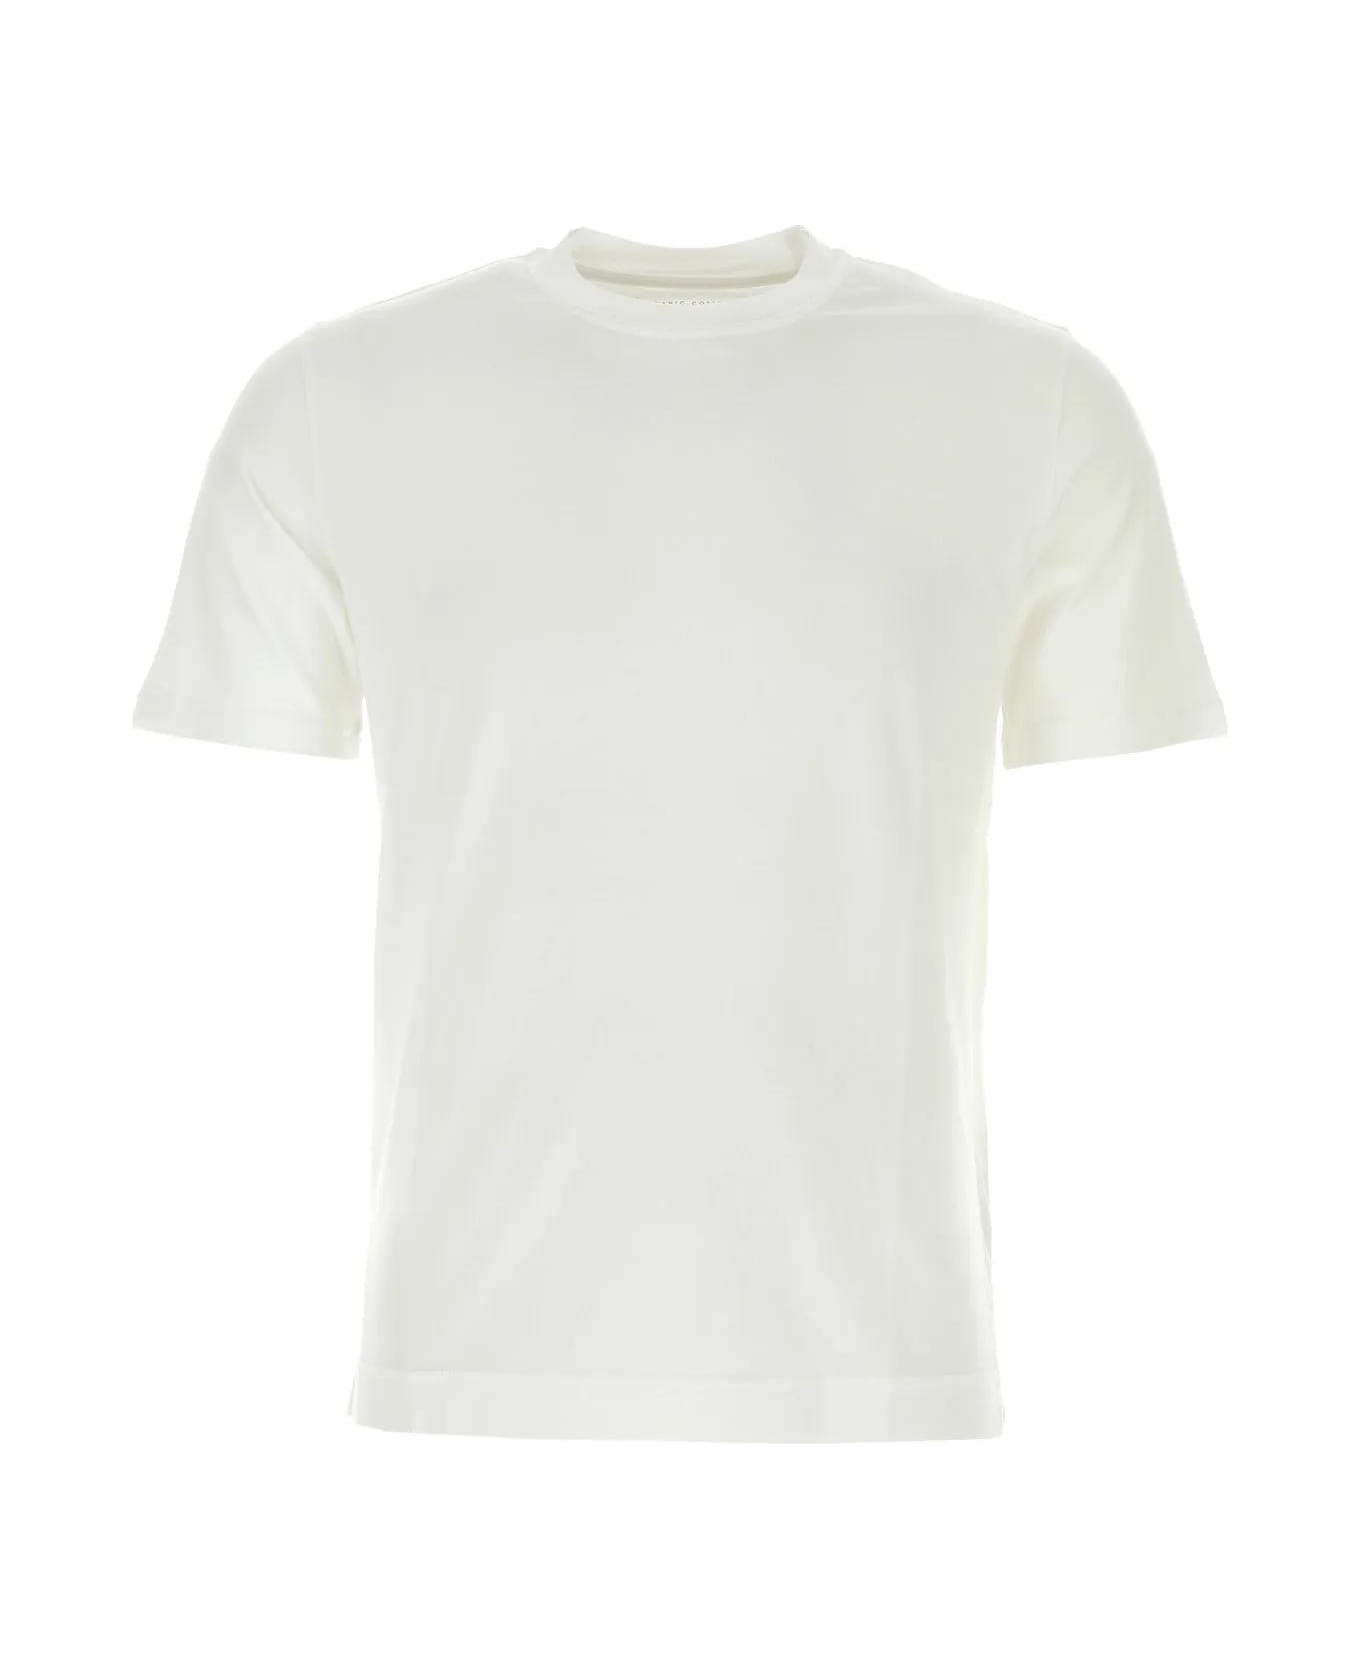 Fedeli White Cotton T-shirt - WHITE シャツ